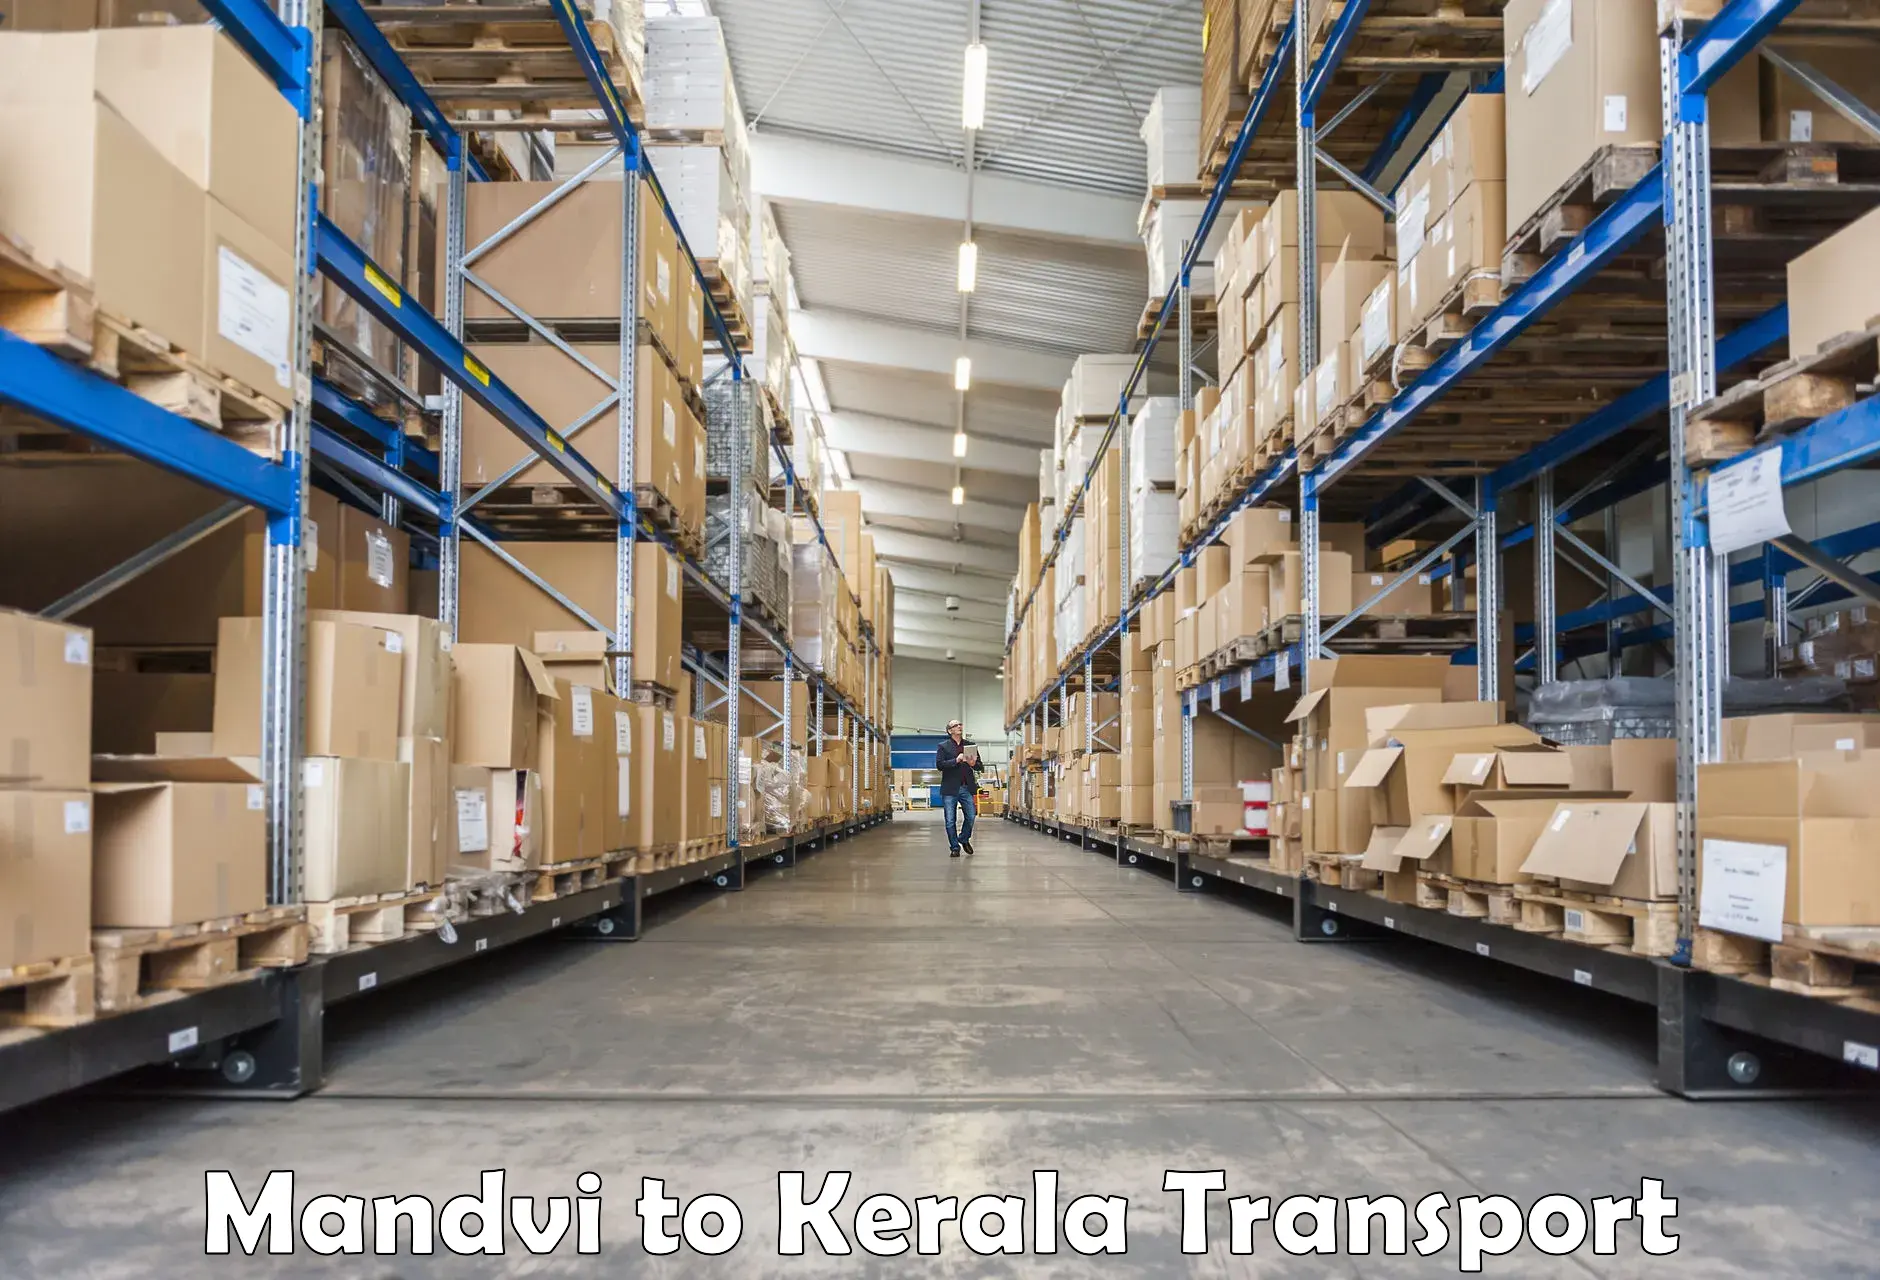 Truck transport companies in India Mandvi to Mundakayam